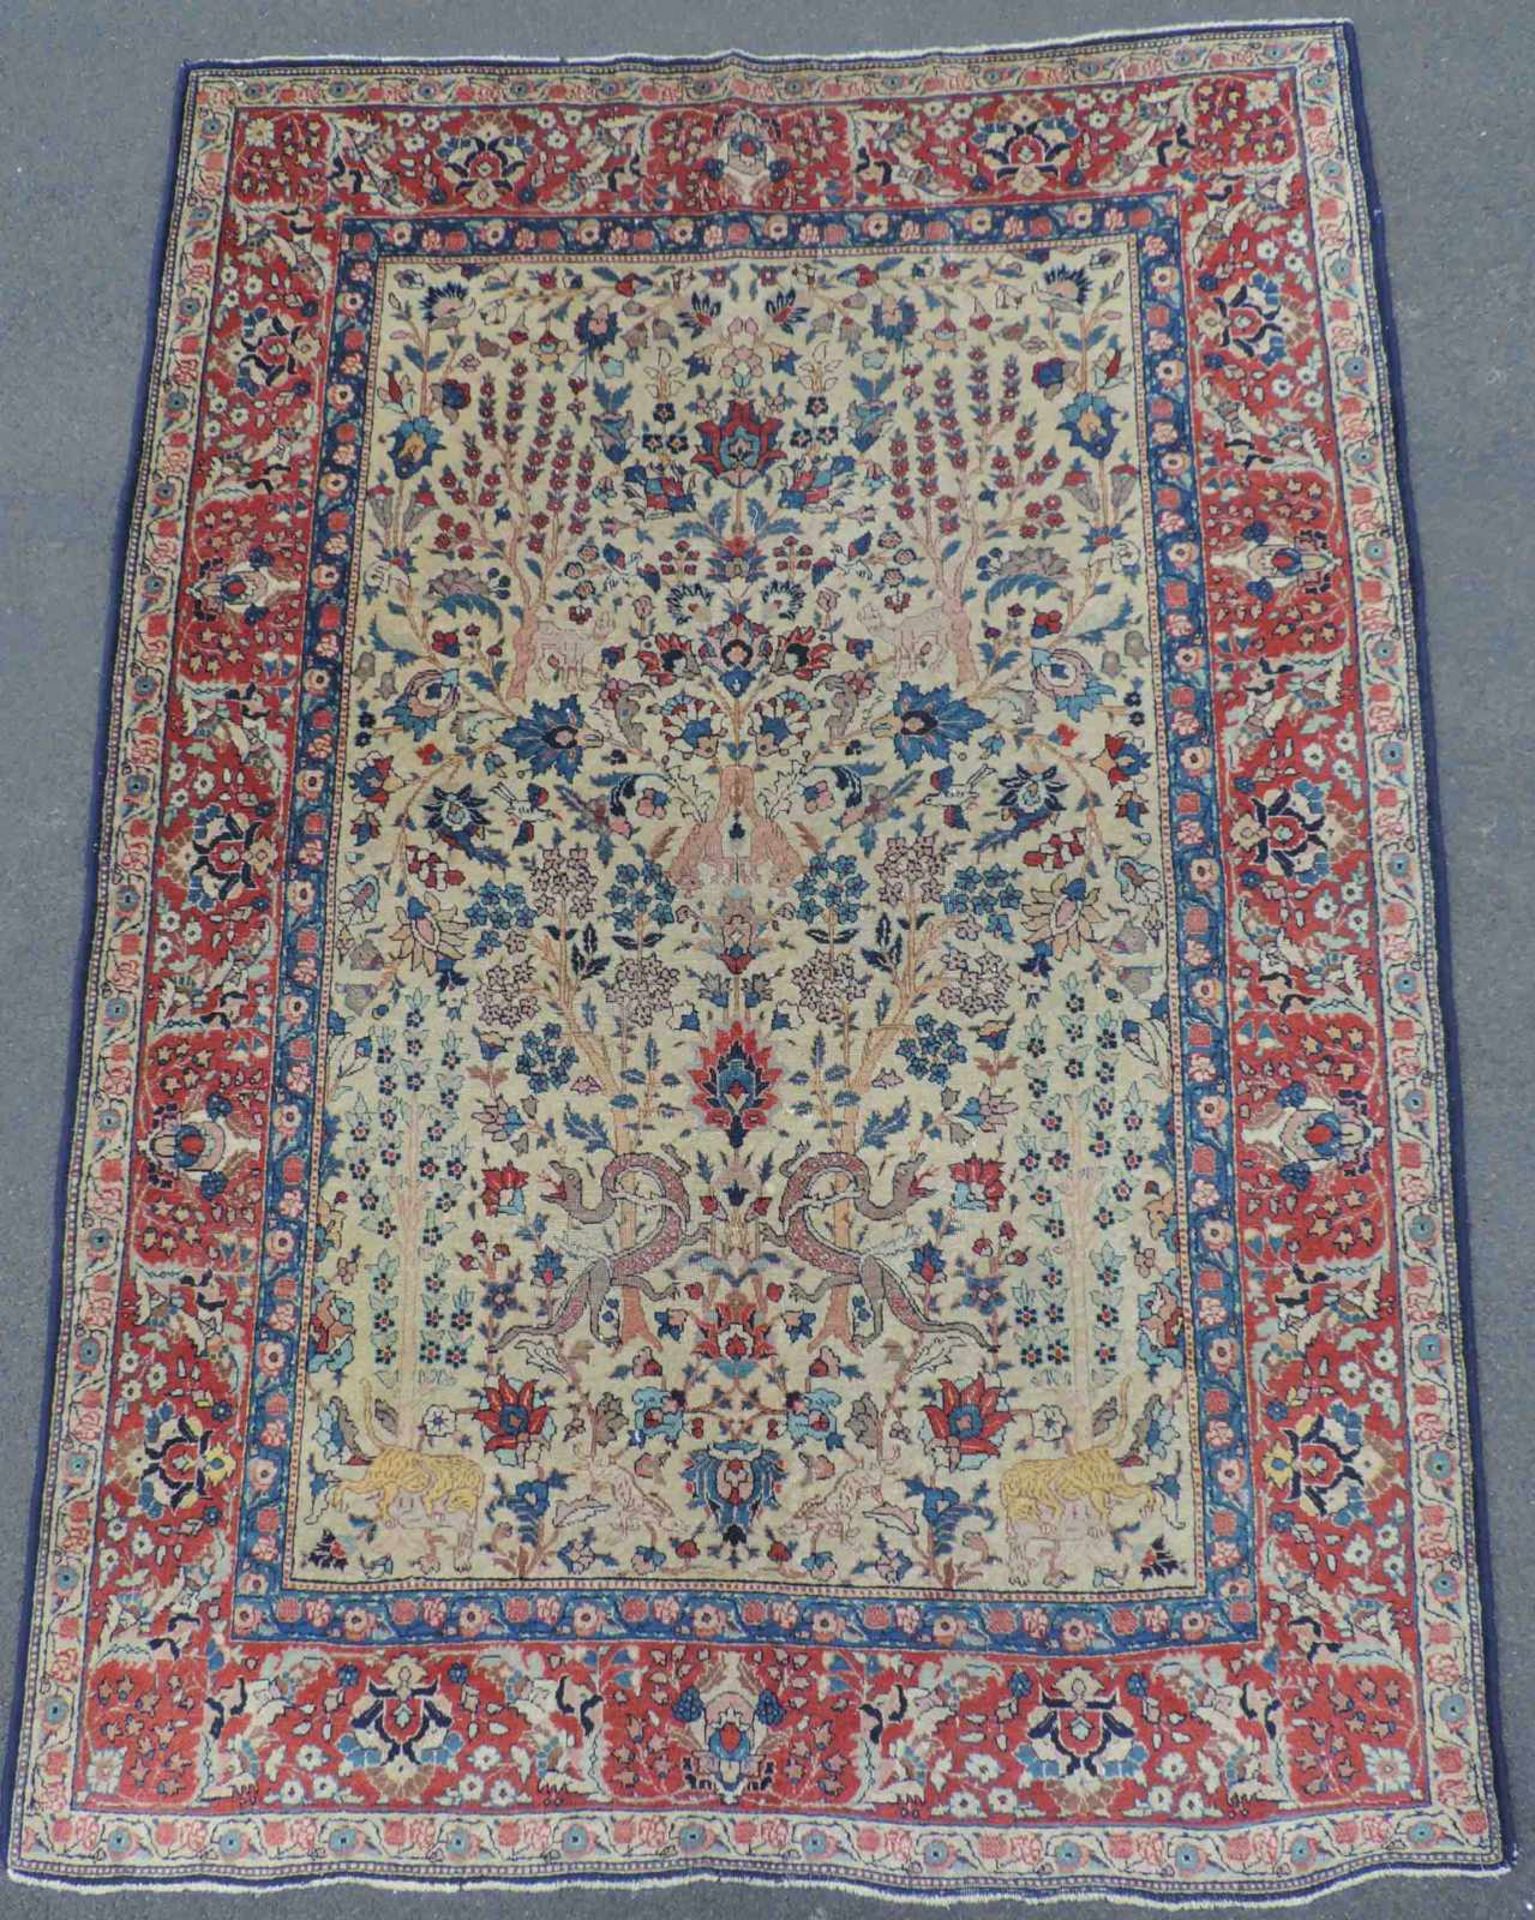 Täbriz Paradiesteppich. Iran, alt, um 1920. 198 cm x 140 cm. Handgeknüpft. Wolle auf Baumwolle.